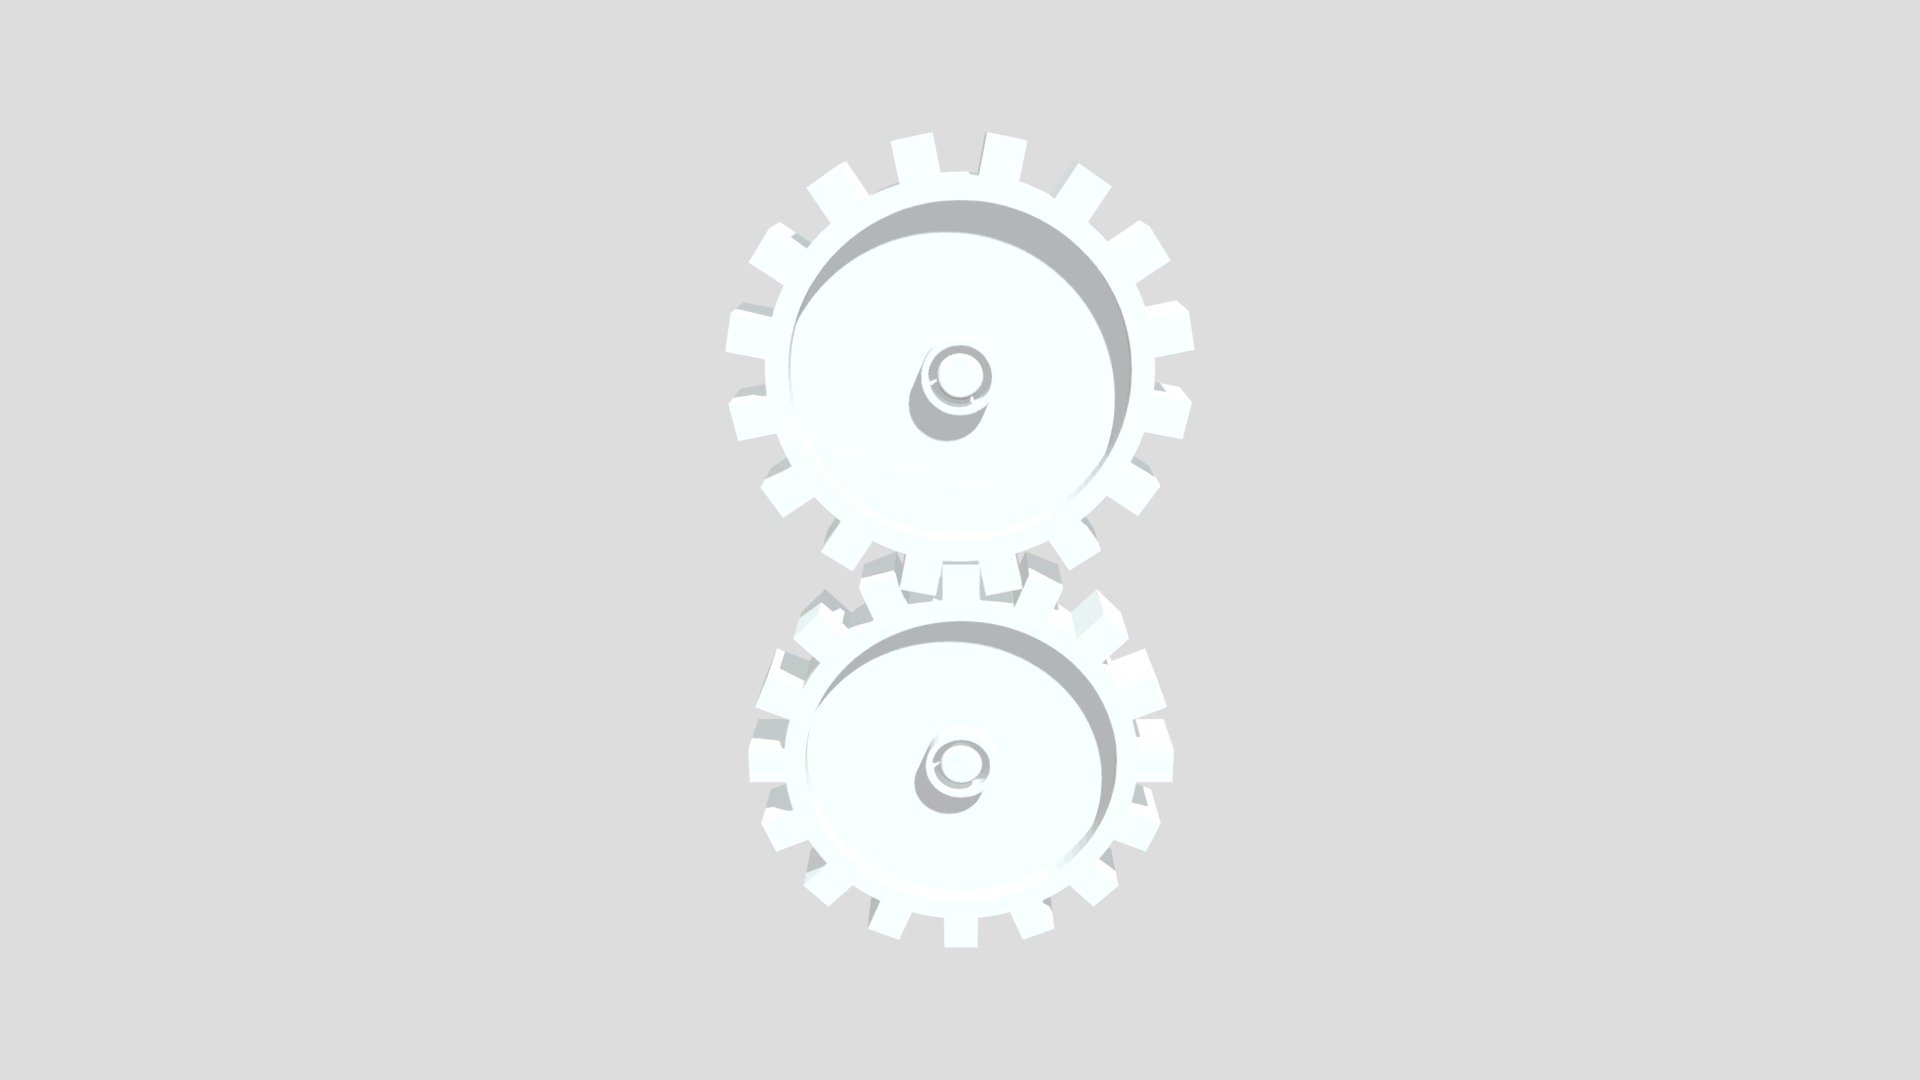 Gear Wheels 3D Model - 3DCADBrowser